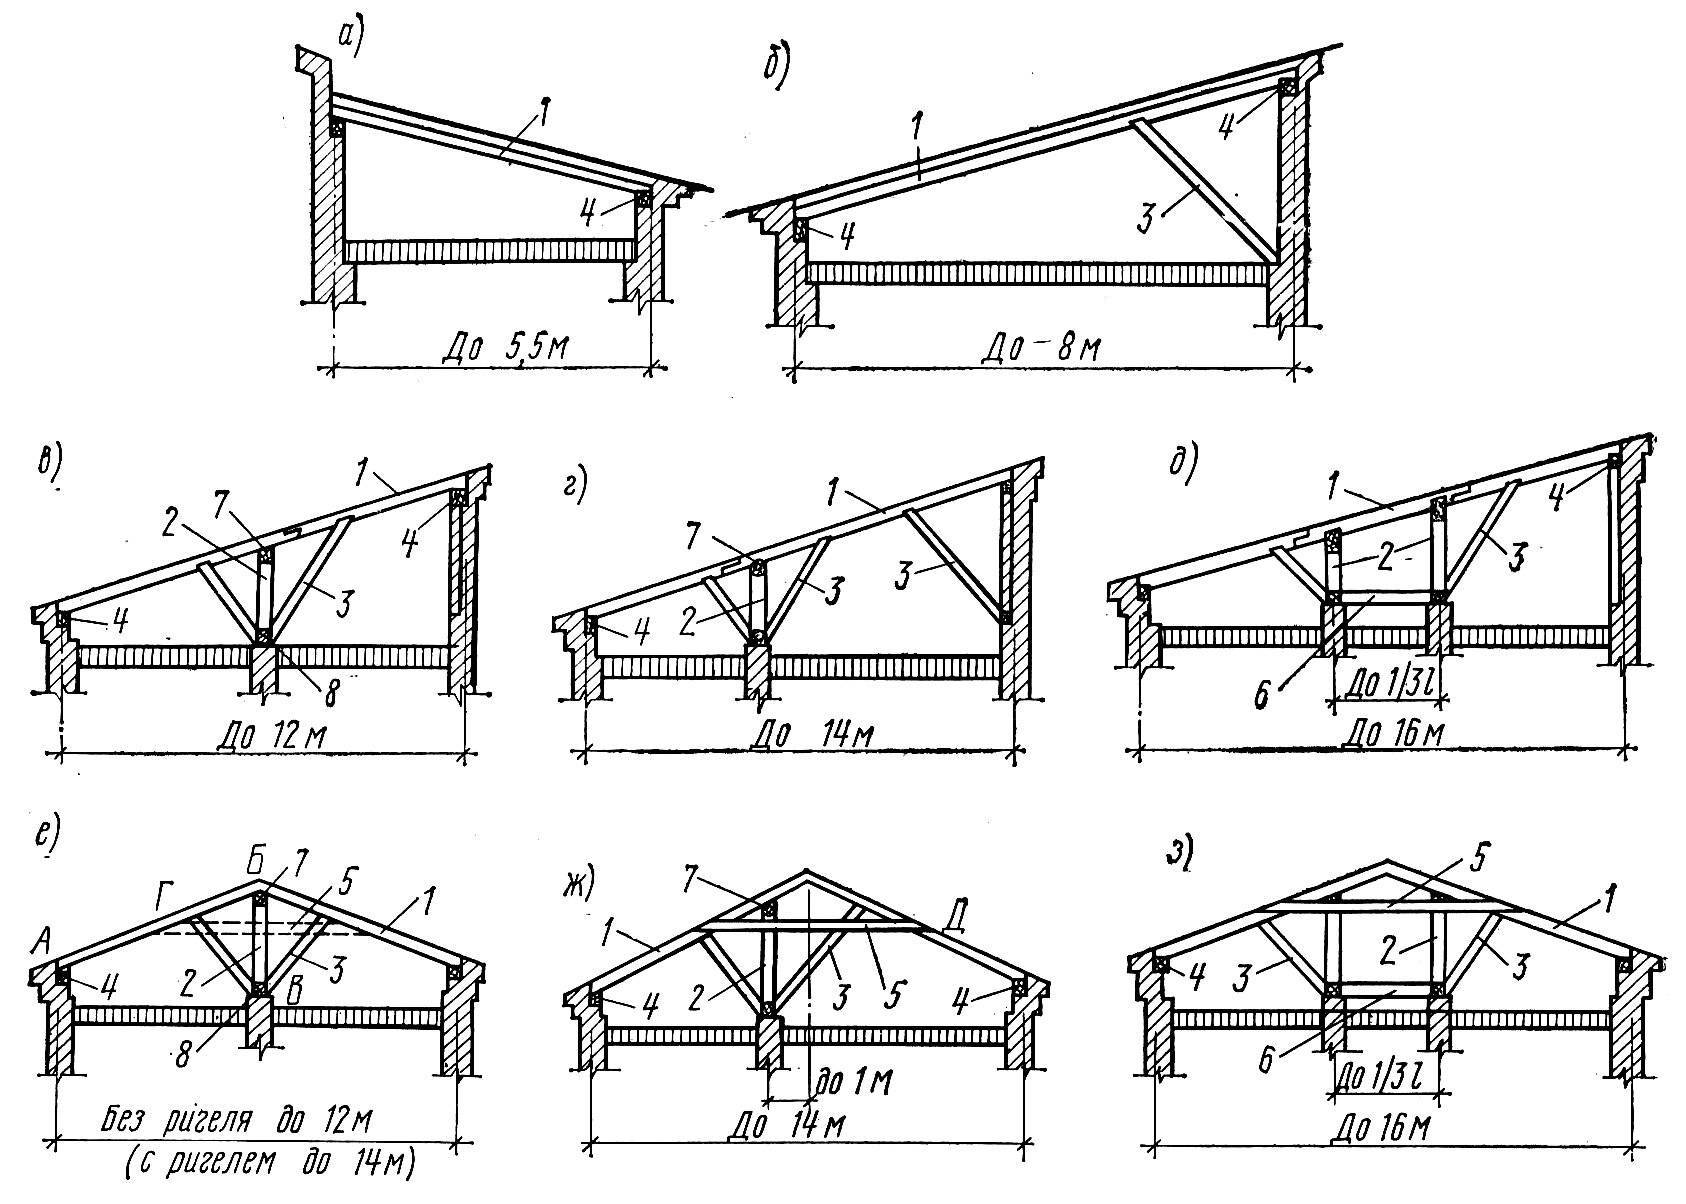 Односкатная крыша своими руками — чертежи и пошаговая инструкция